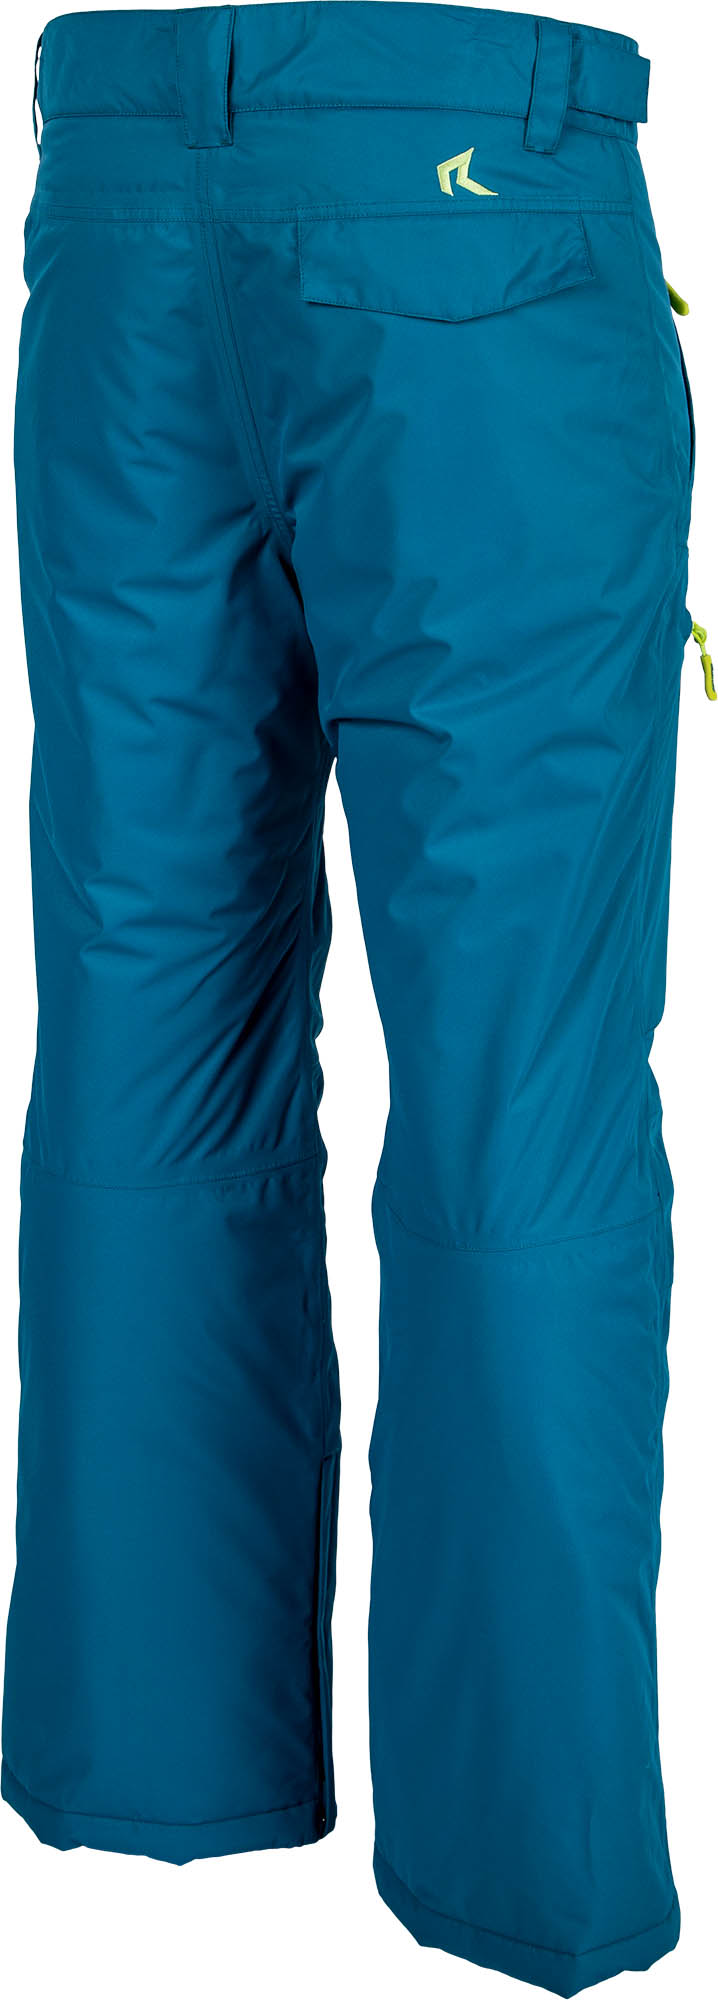 Pánské snowboardové kalhoty